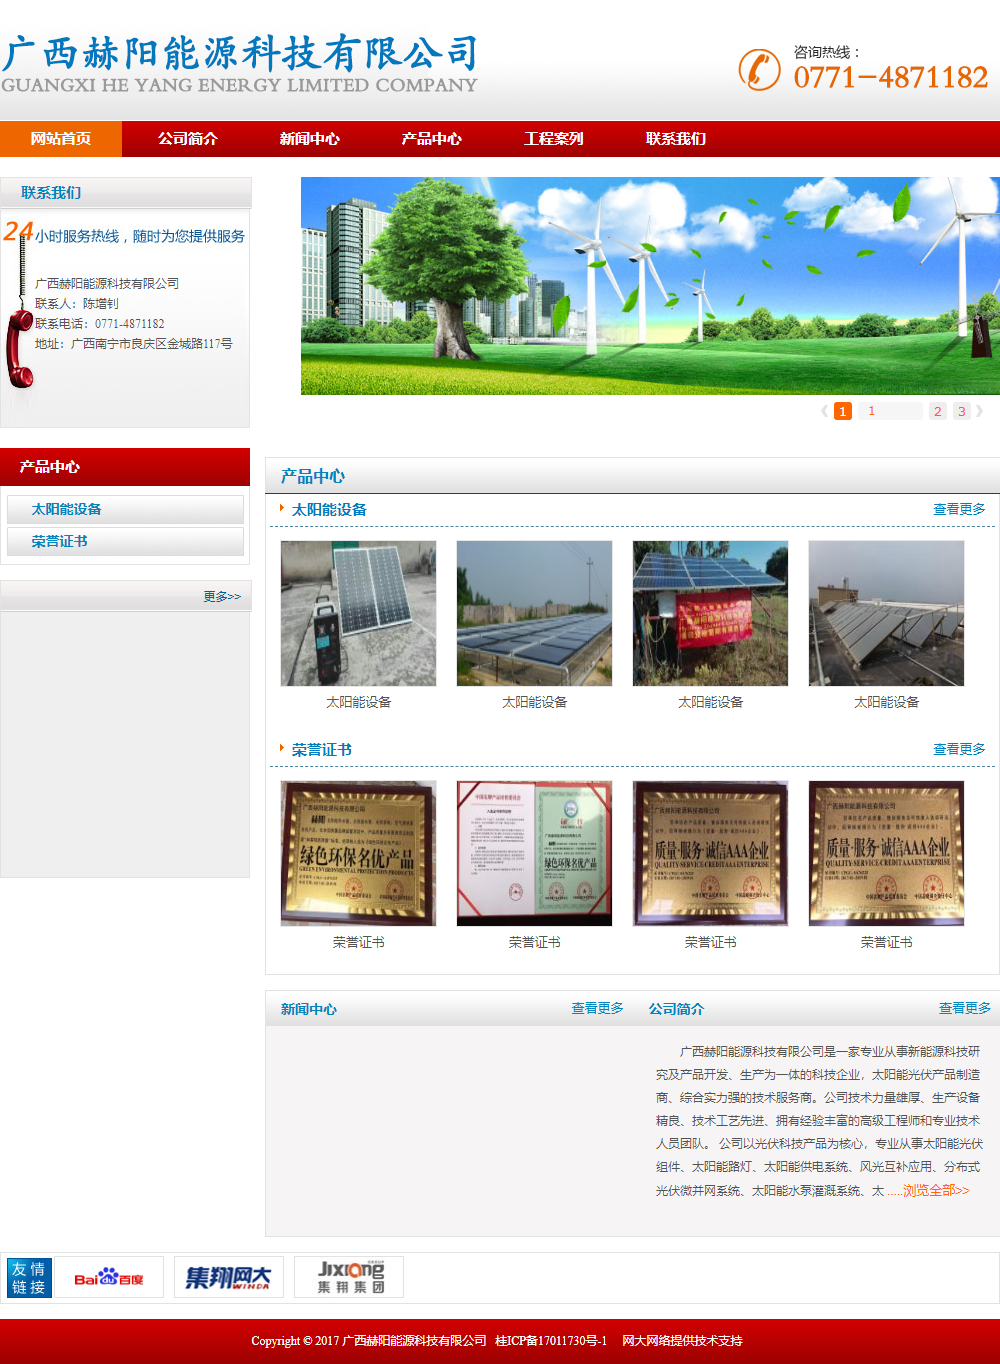 广西赫阳能源科技有限公司网站案例